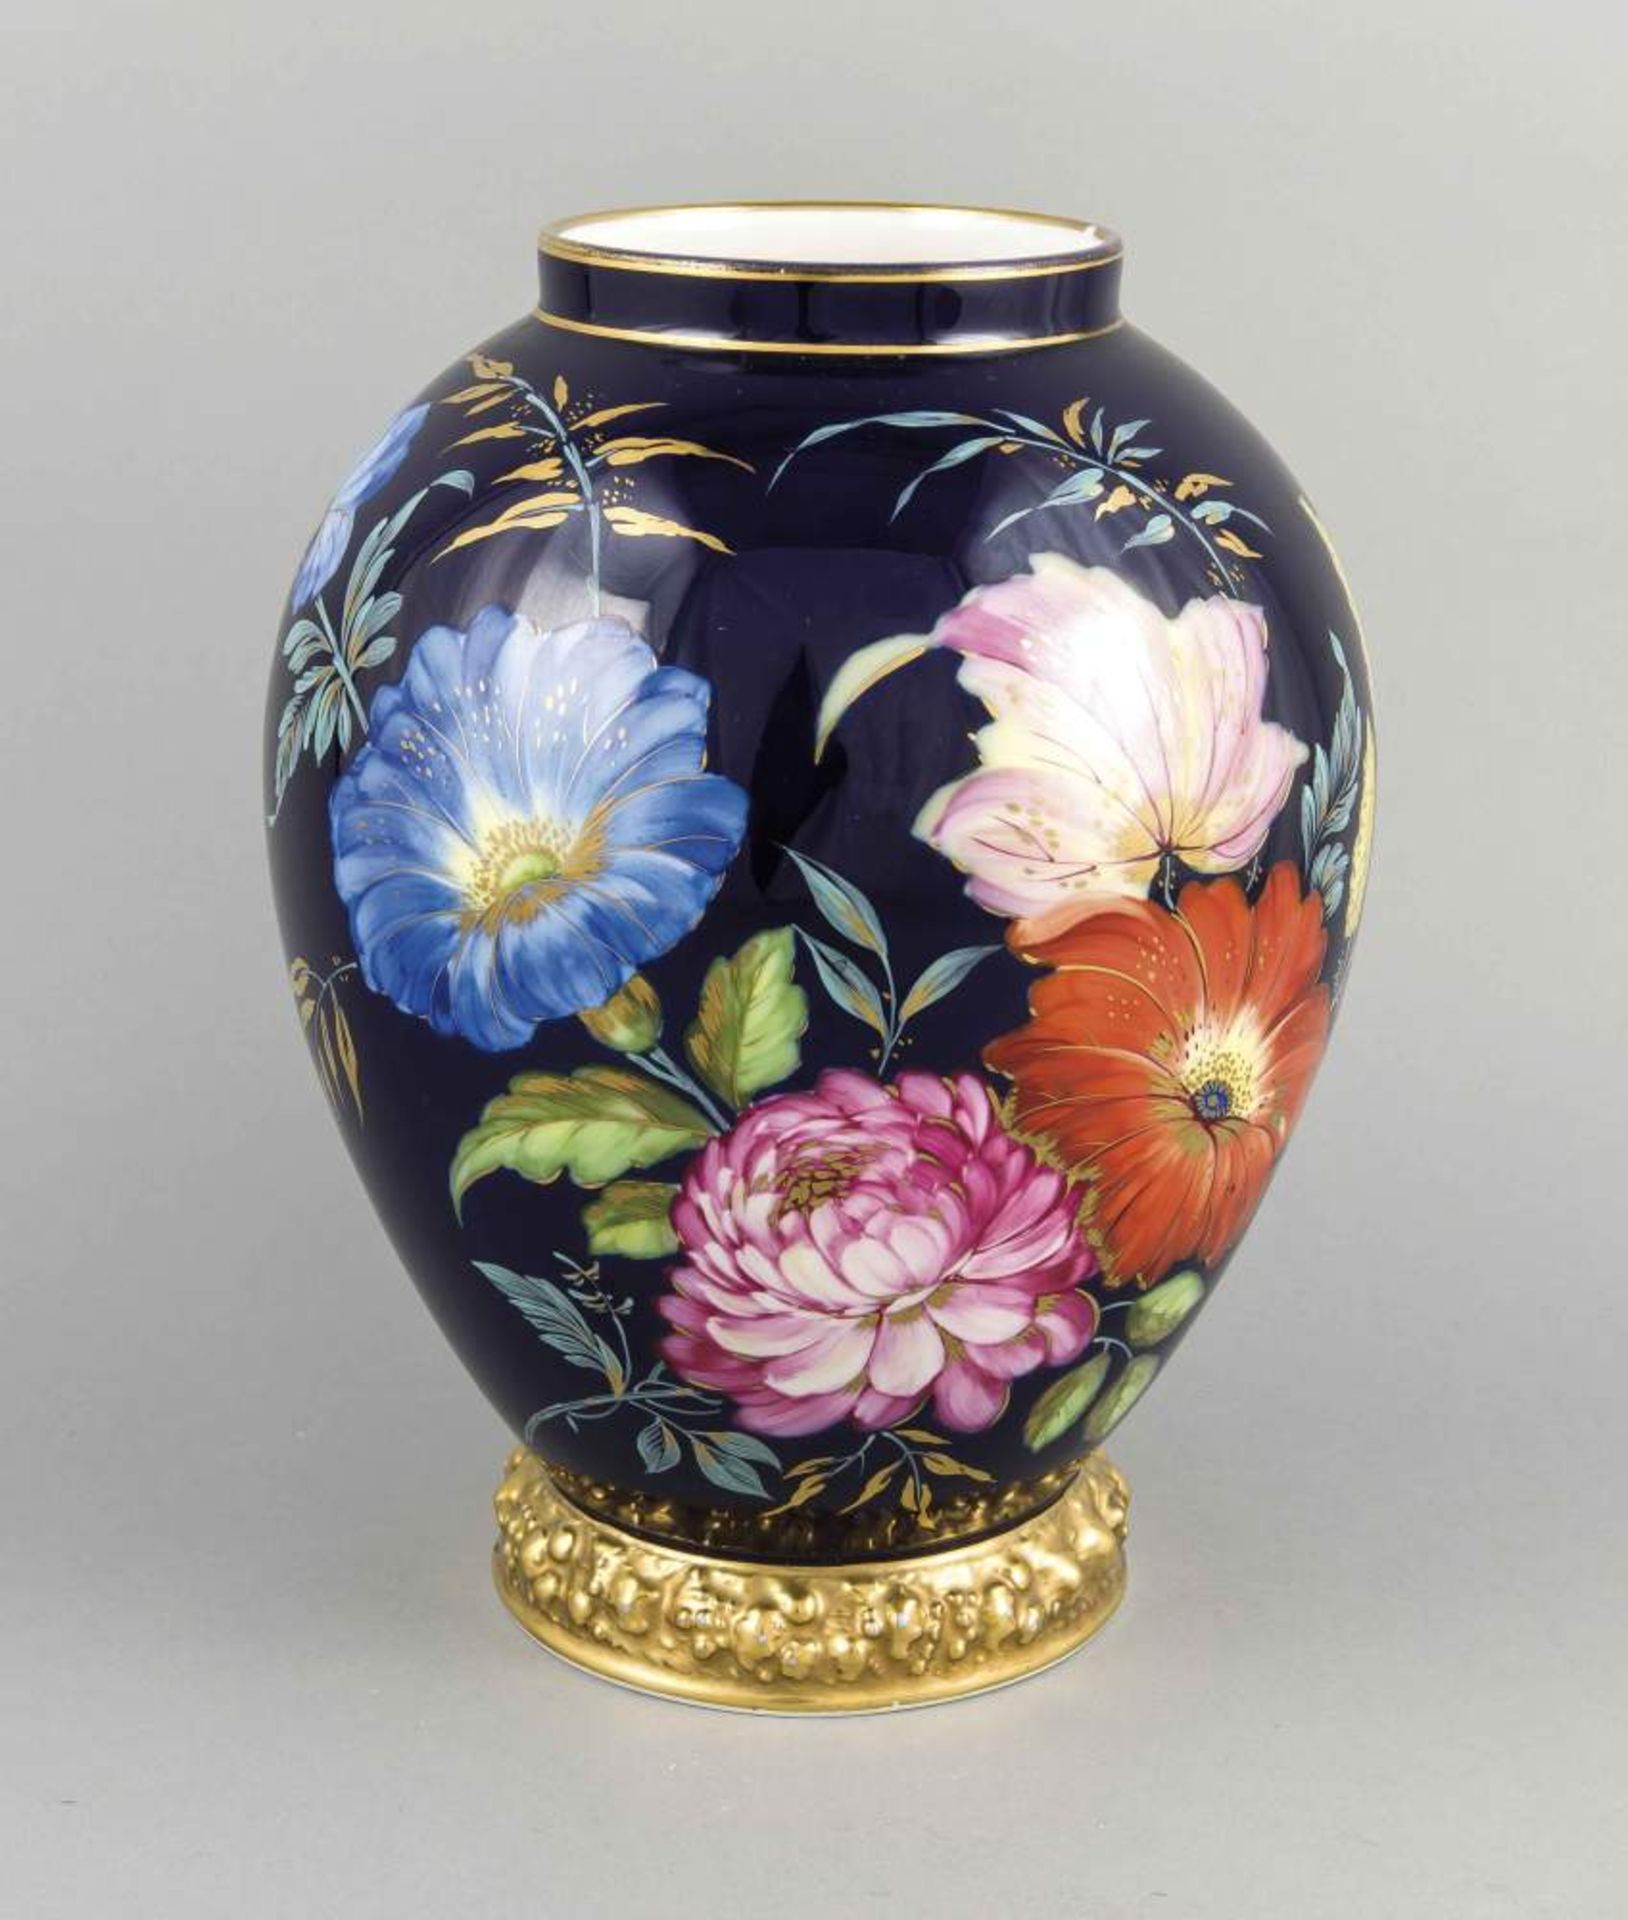 Vase, Rosenthal, Anf. 20. Jh., Form Maria weiss, polychrome Handmalerei, Blumen aufkobaltblauem